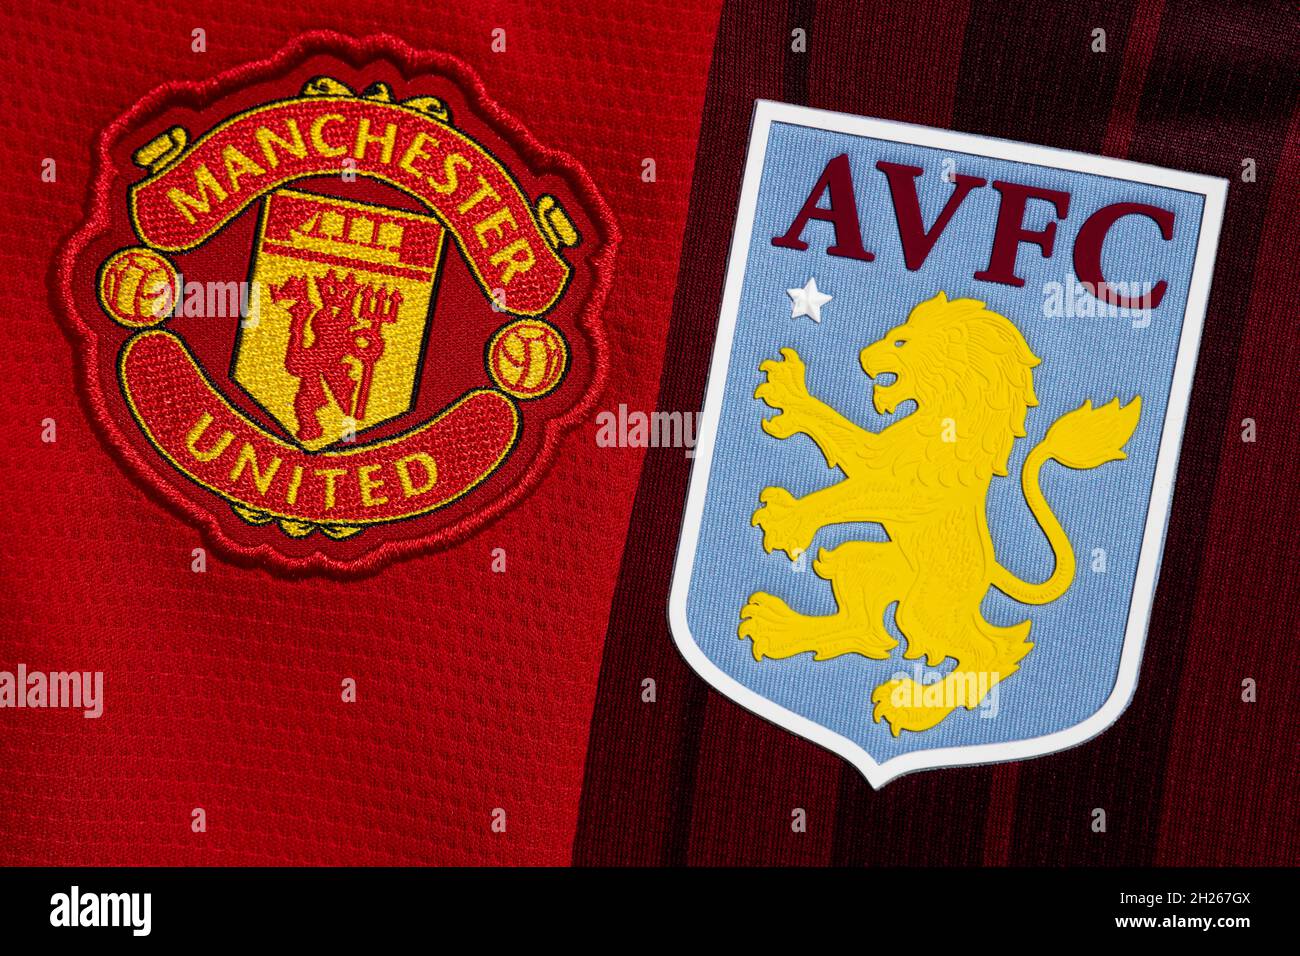 Nahaufnahme des Vereinswappens von man United und Aston Villa. Stockfoto